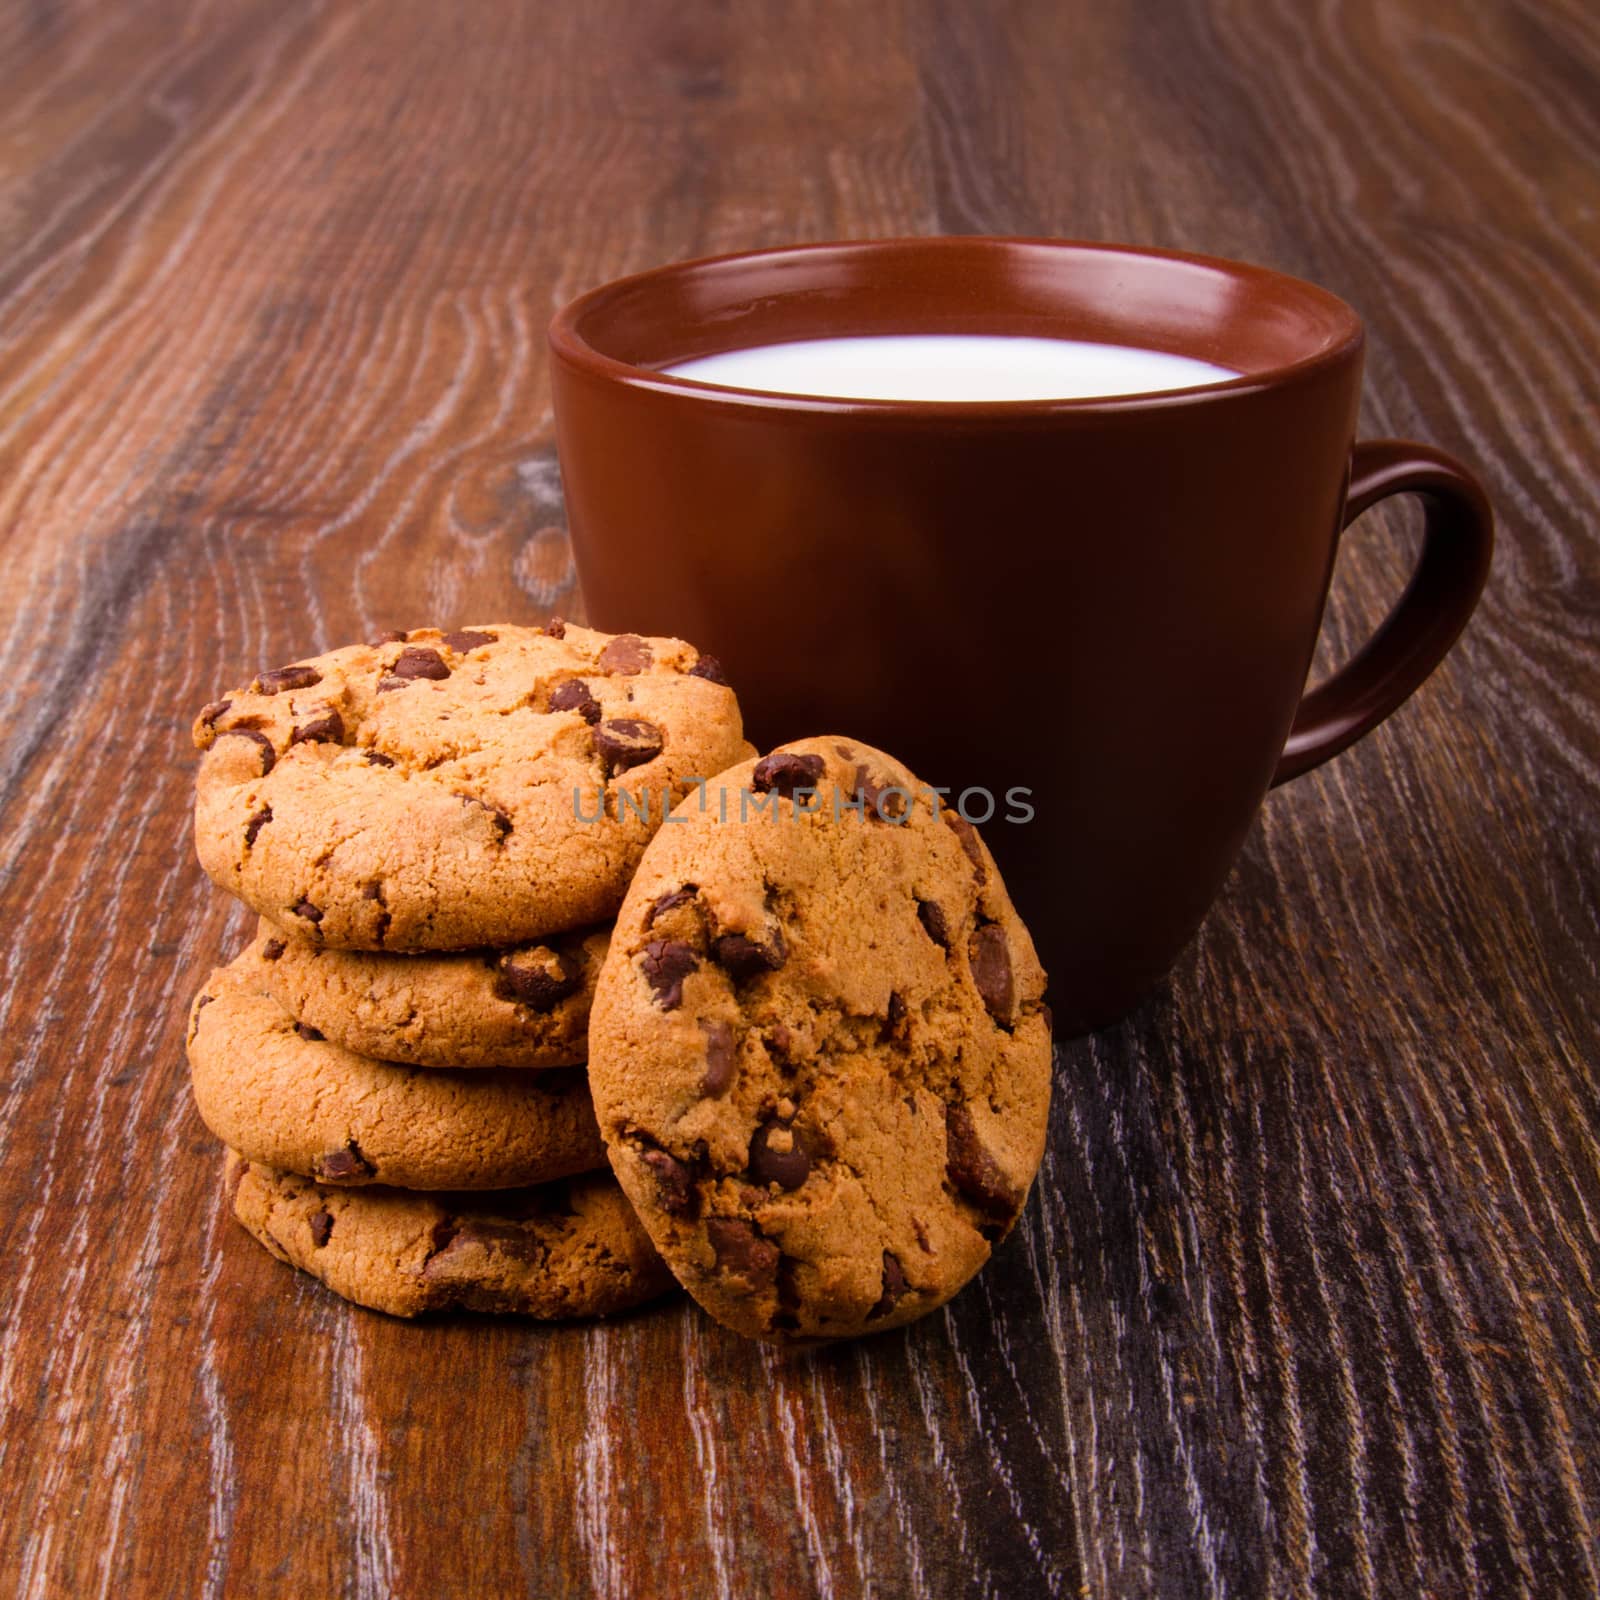 Cookies and milk by grigorenko